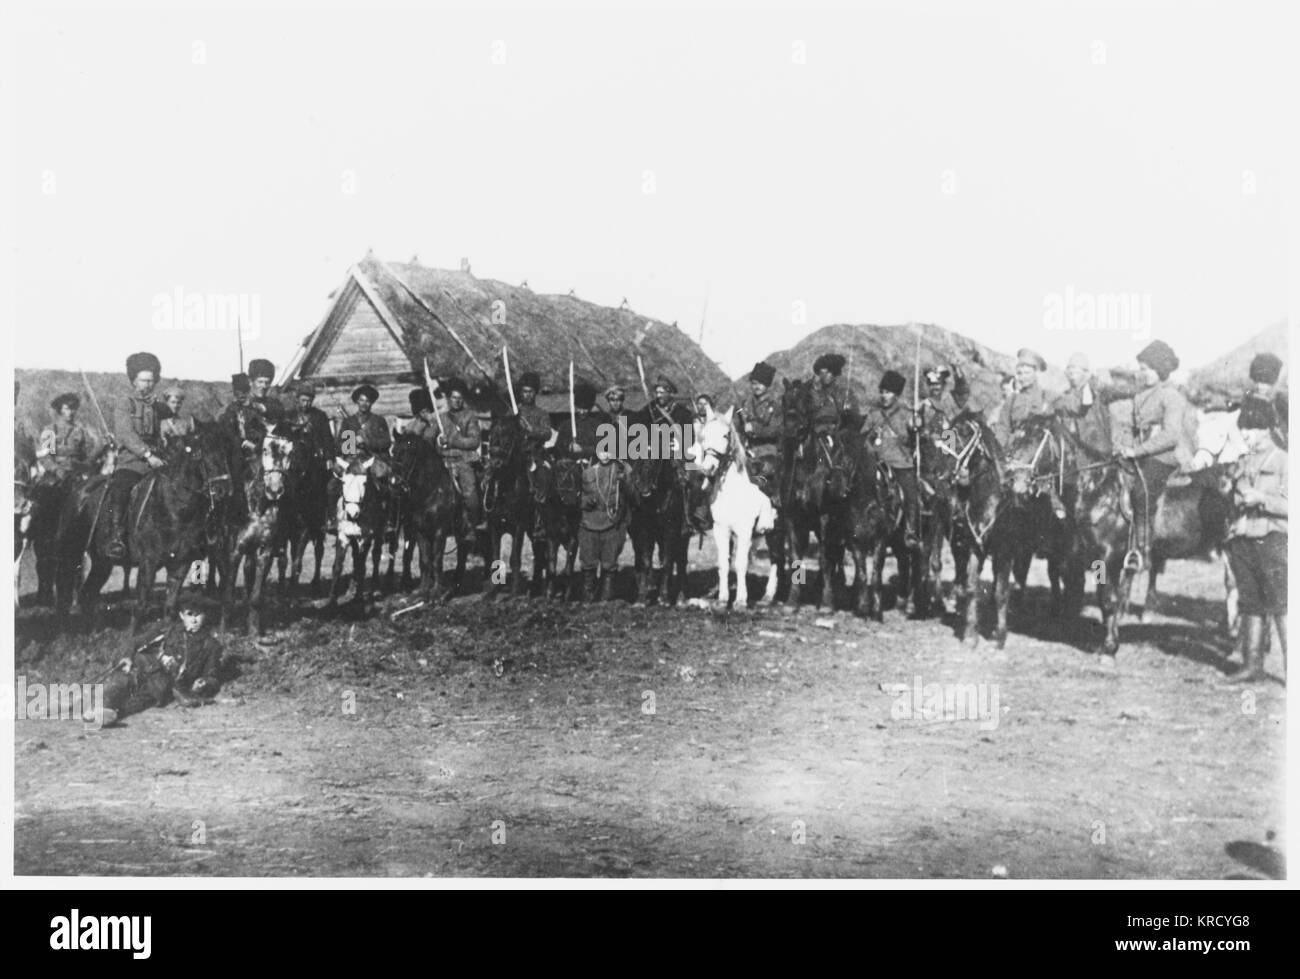 El legendario equitación de los Cosacos, asegura que la caballería del ejército rojo es singularmente eficaz : este destacamento posan para la fotografía en una aldea ucraniana. Fecha: 1918 Foto de stock